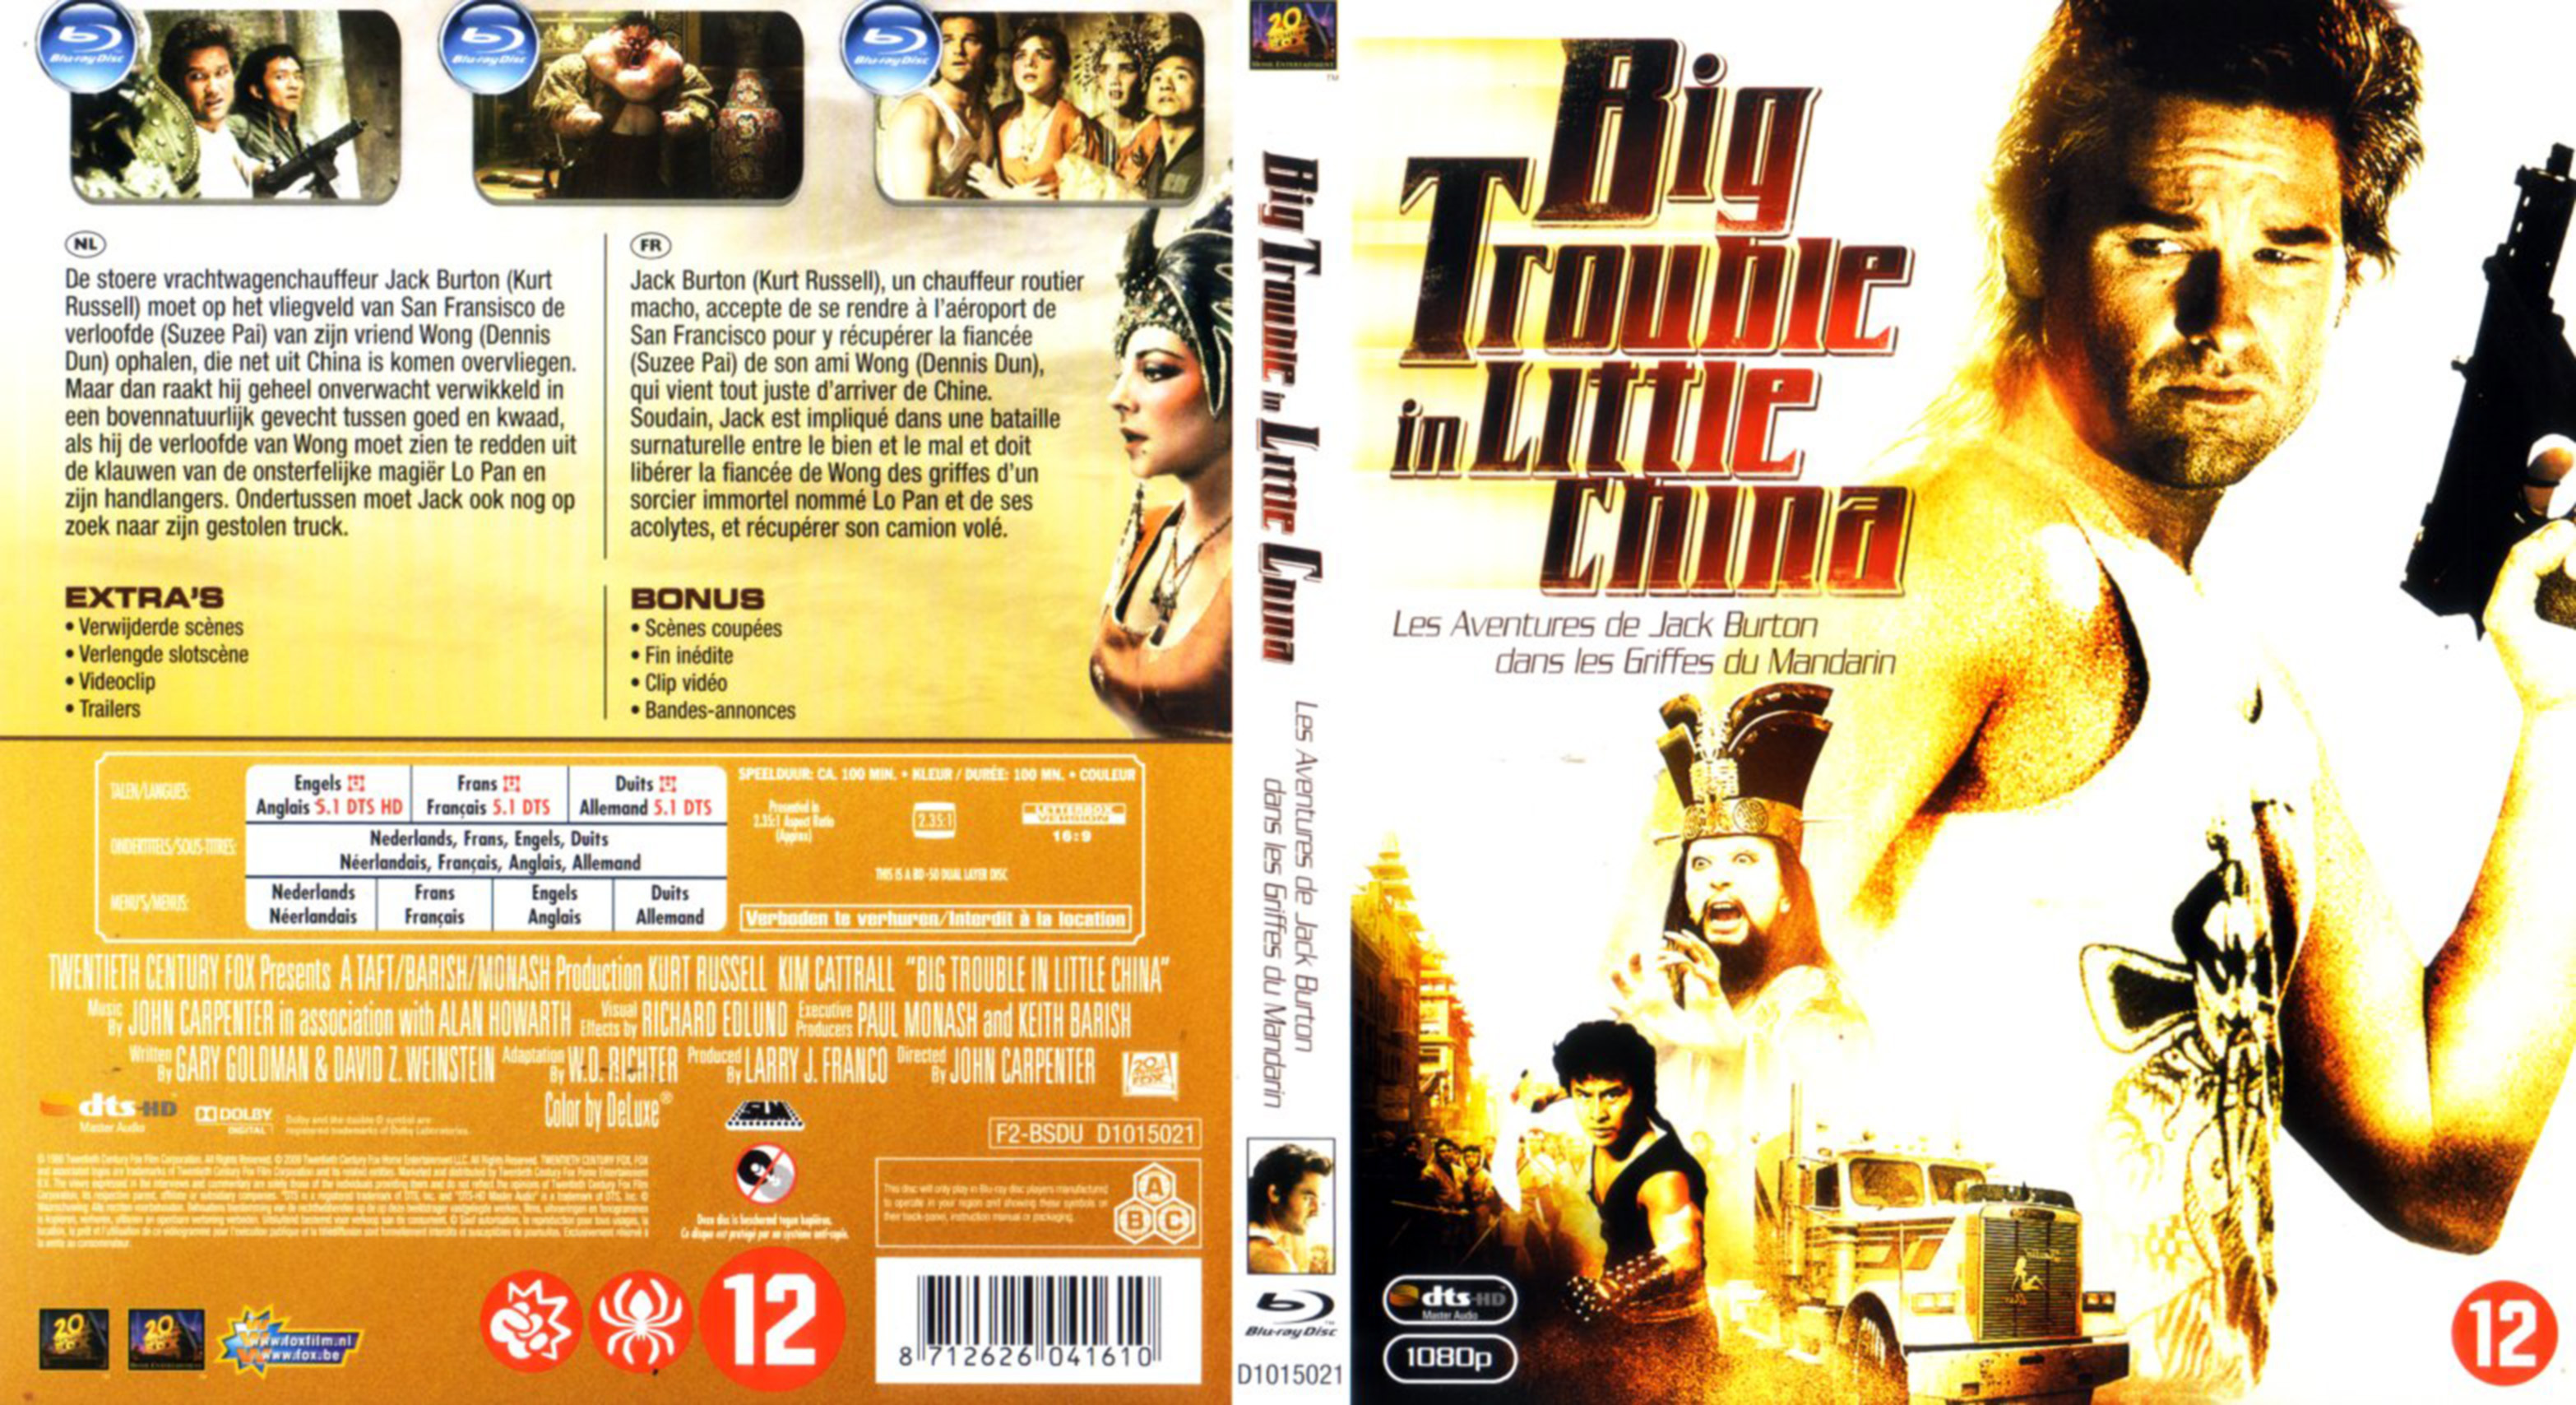 Jaquette DVD Les aventures de Jack Burton dans les griffes du mandarin (BLU RAY)